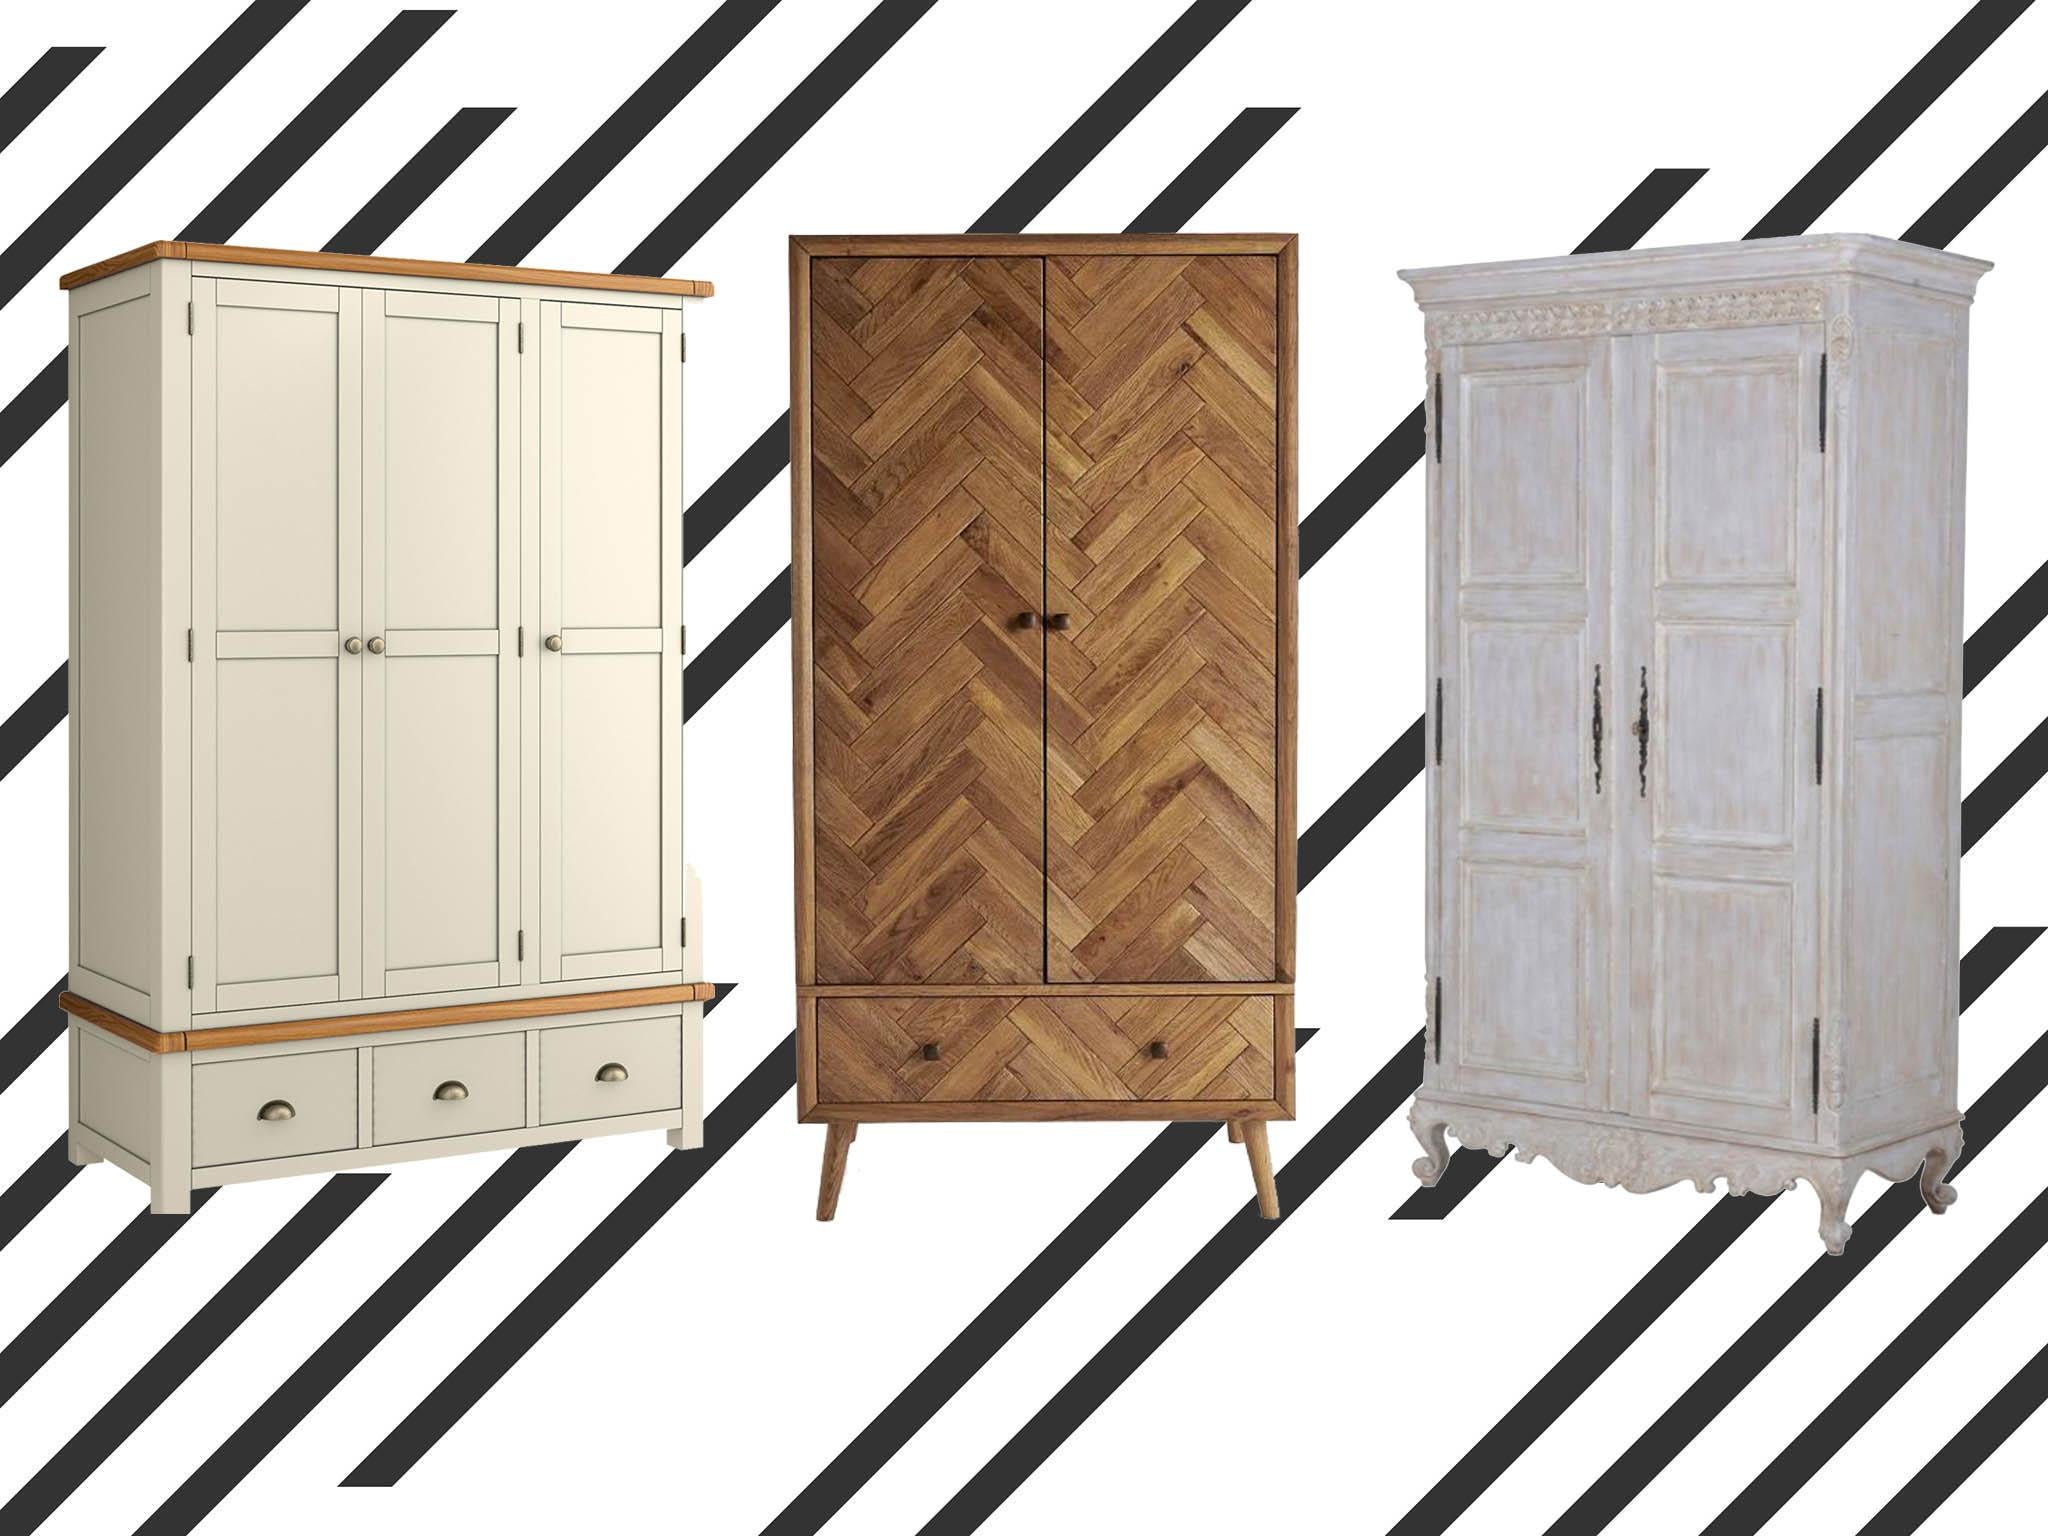 6 Metal Drawers Vintage Style Storage Solution Get Goods Industrial Metal Storage Cabinet Wooden Top